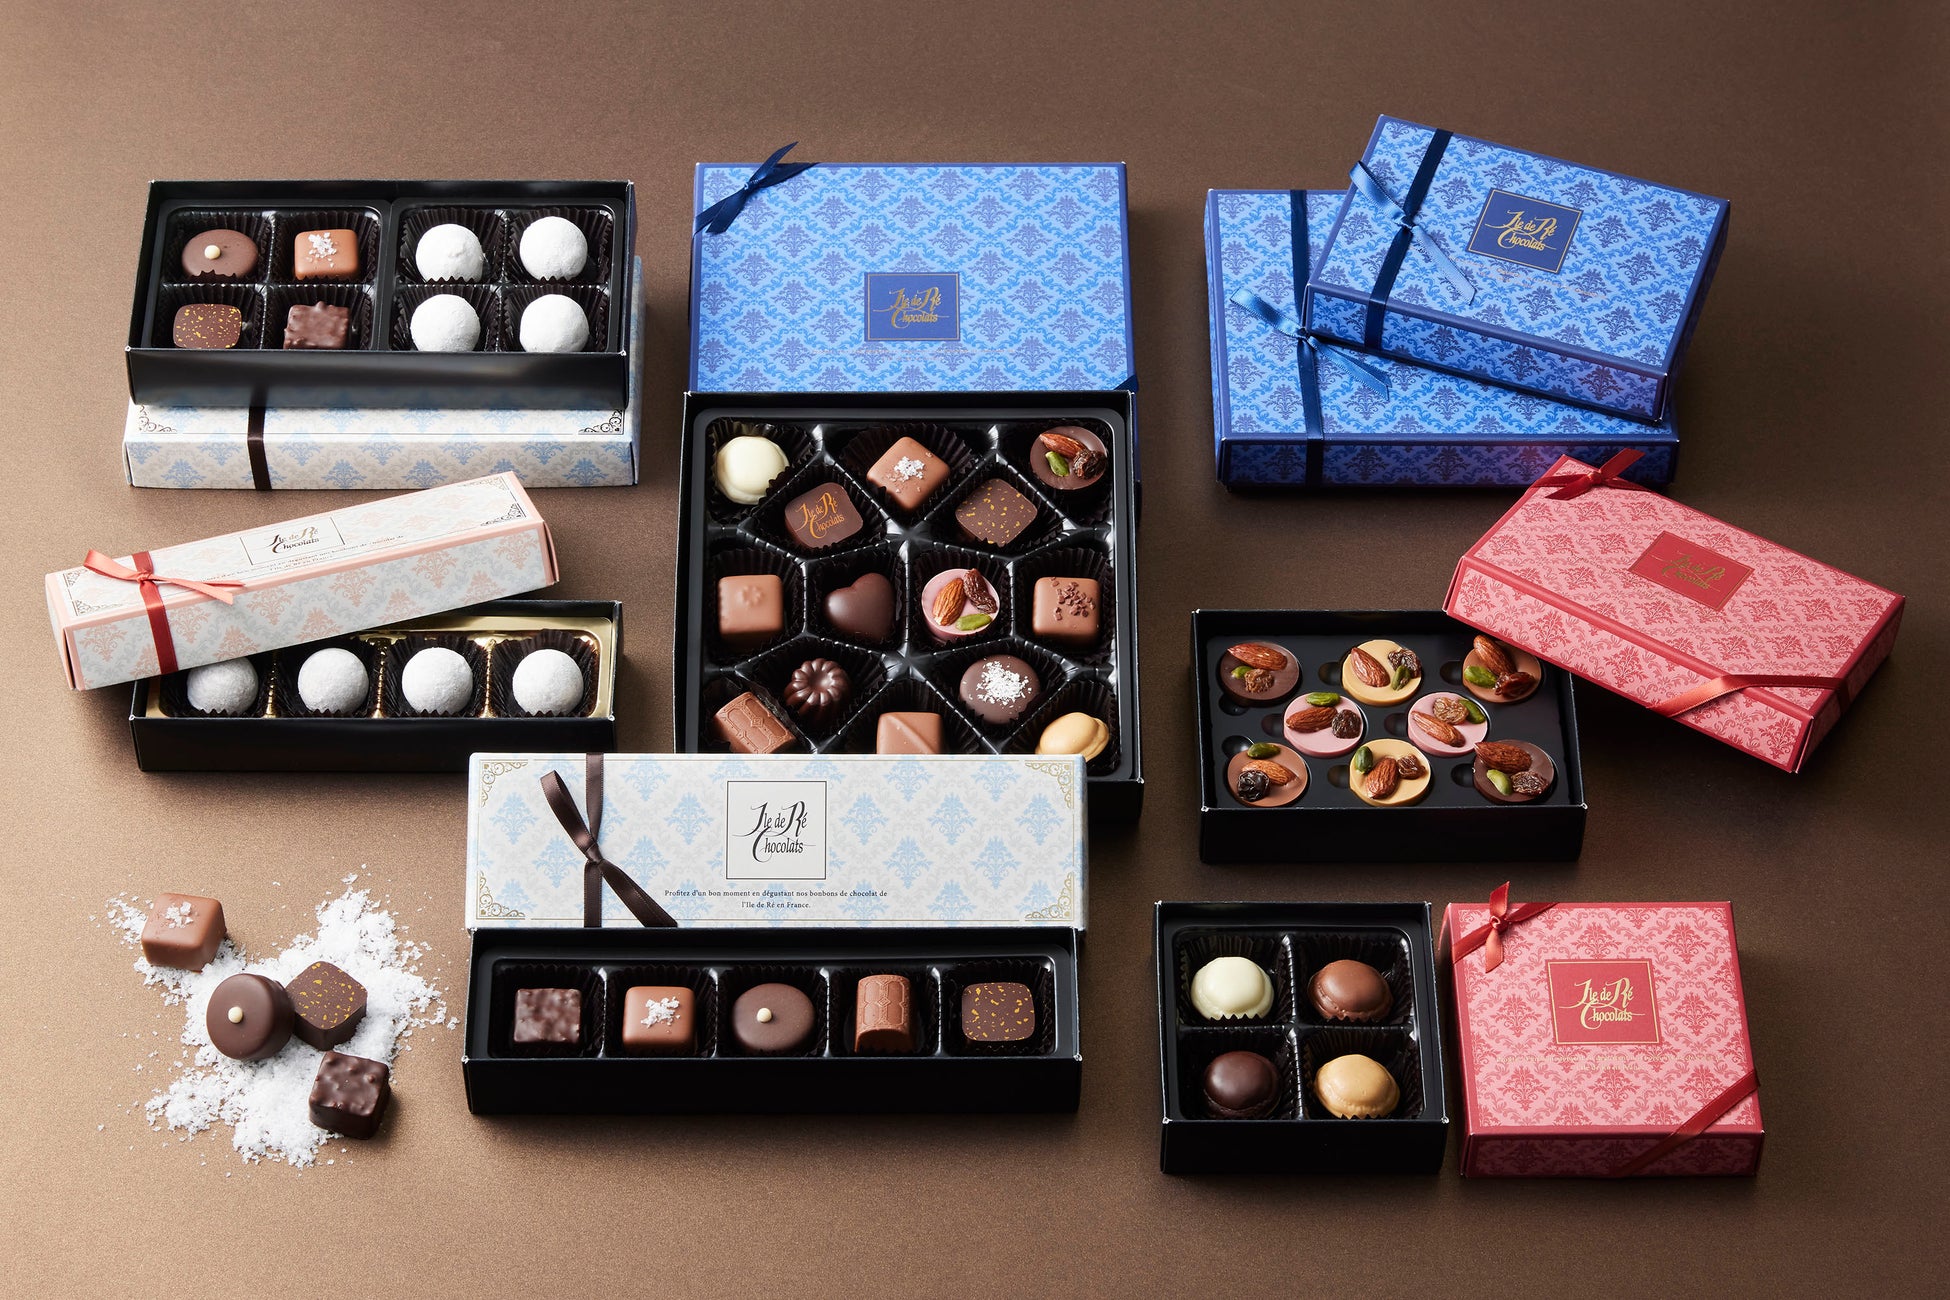 新作の北海道ショコラを直送！
老舗菓子屋・柳月から「冬のカフェ・ショコラセット」が
1月18日(水)に発売！5日間限定で送料無料キャンペーンも開催！